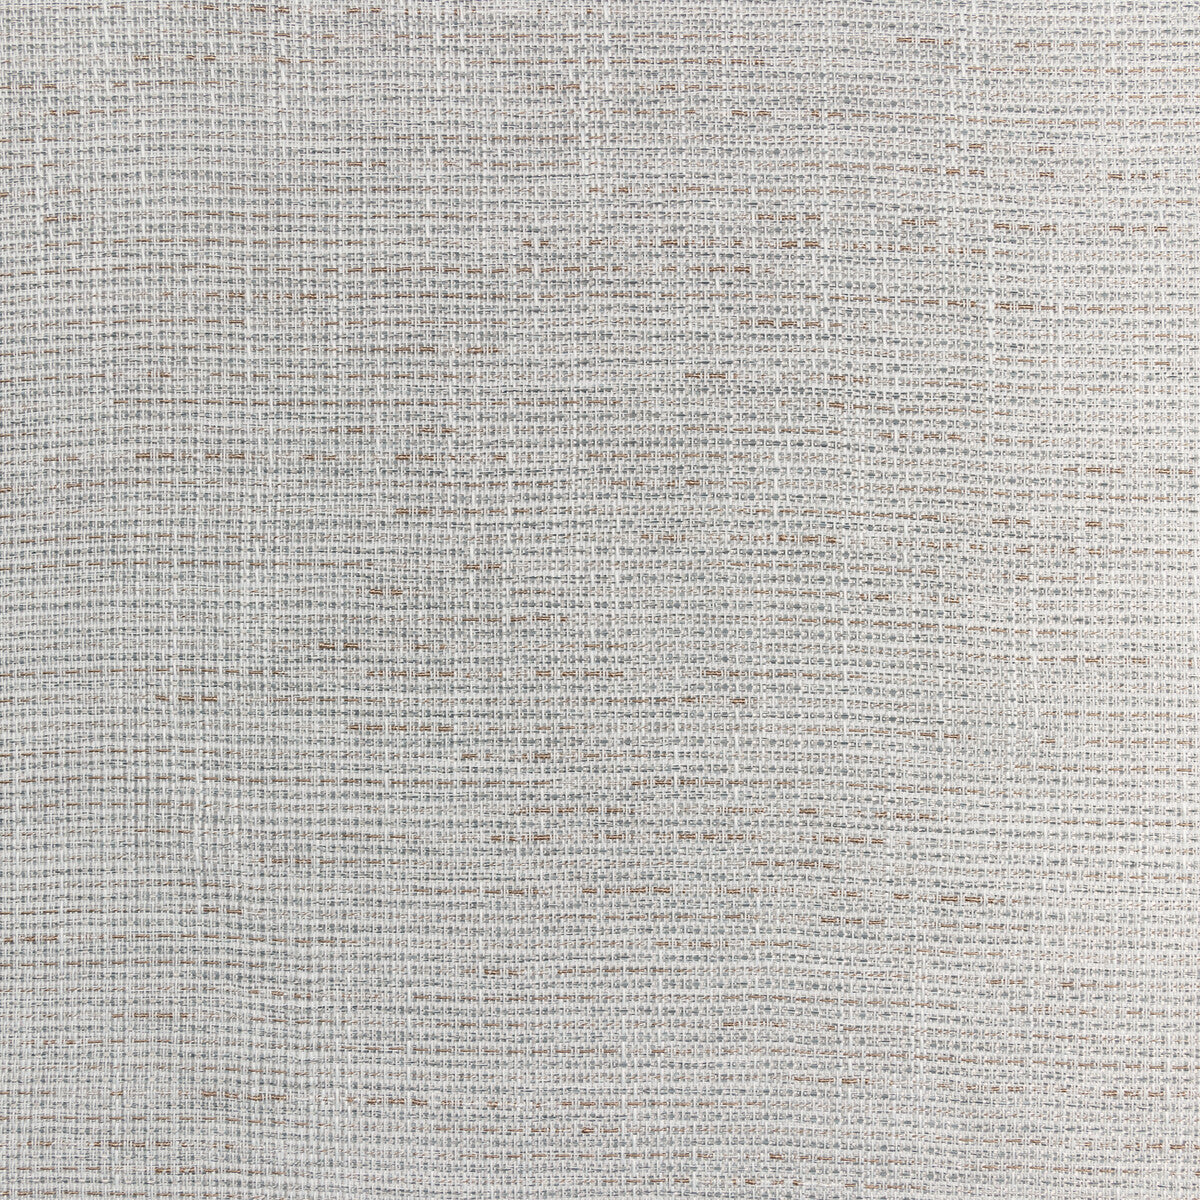 Kravet Basics fabric in 4874-11 color - pattern 4874.11.0 - by Kravet Basics